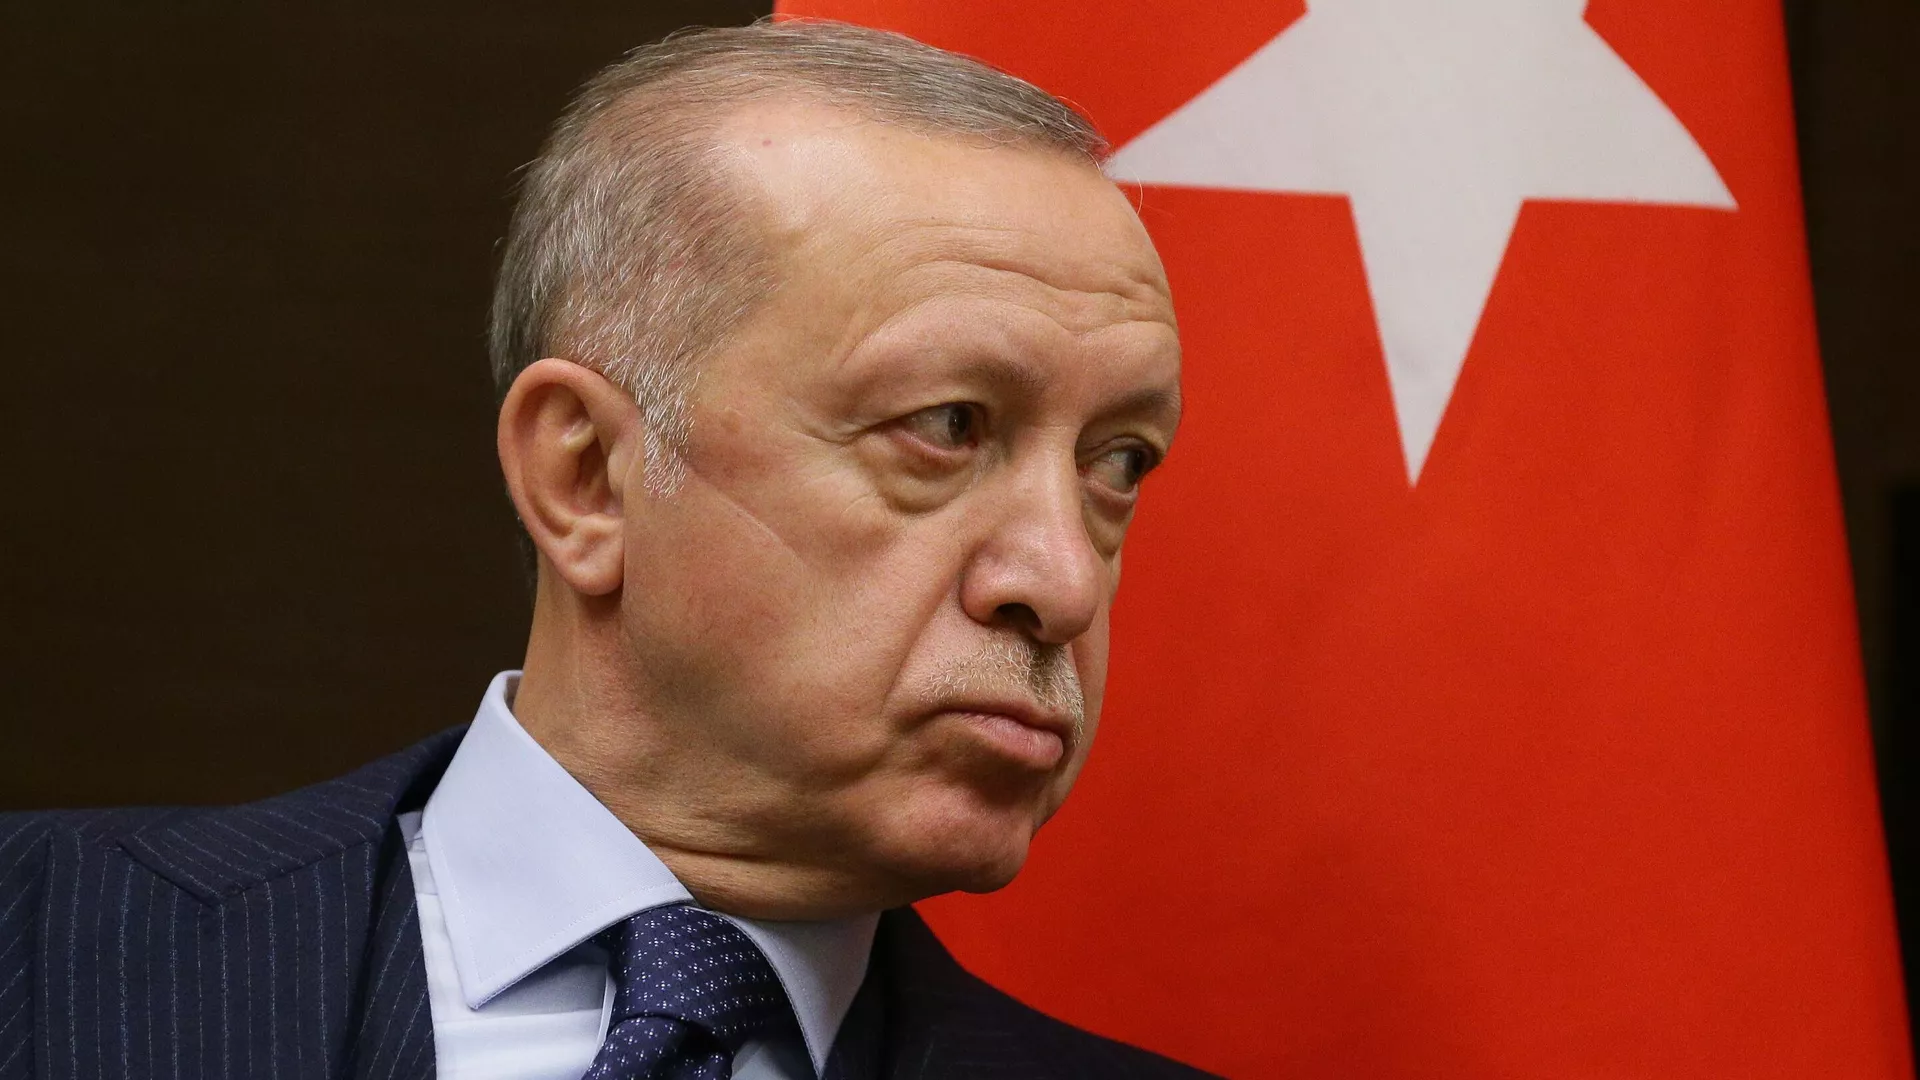  Turquía afirma que no aceptará la adhesión de Finlandia y Suecia a la OTAN